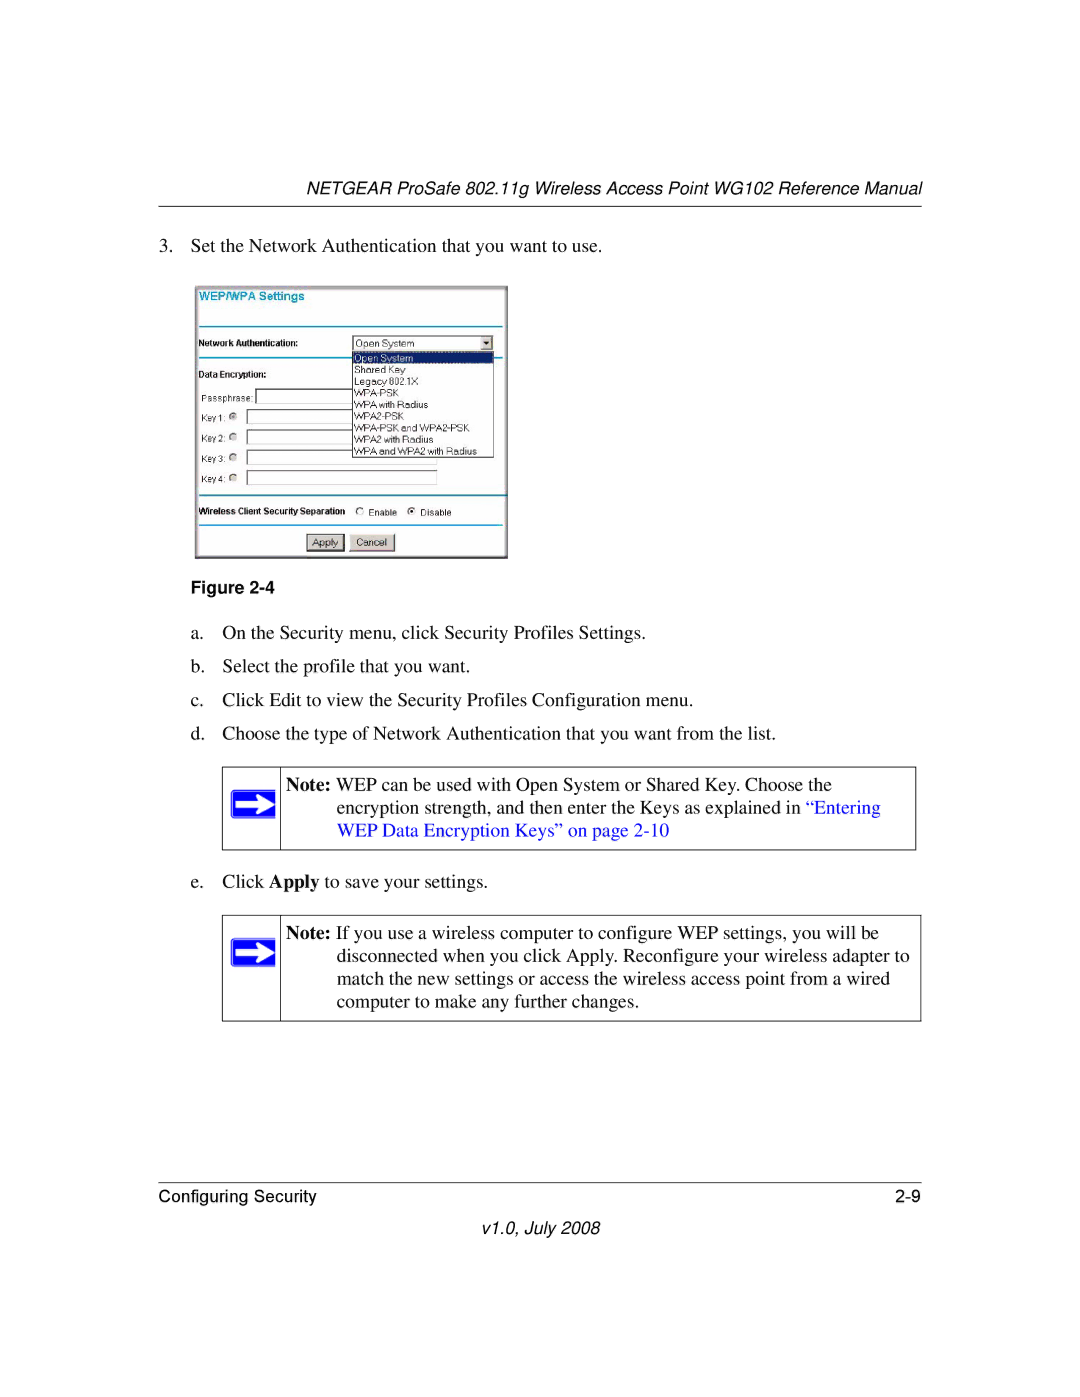 NETGEAR WG102NA manual V1.0, July 